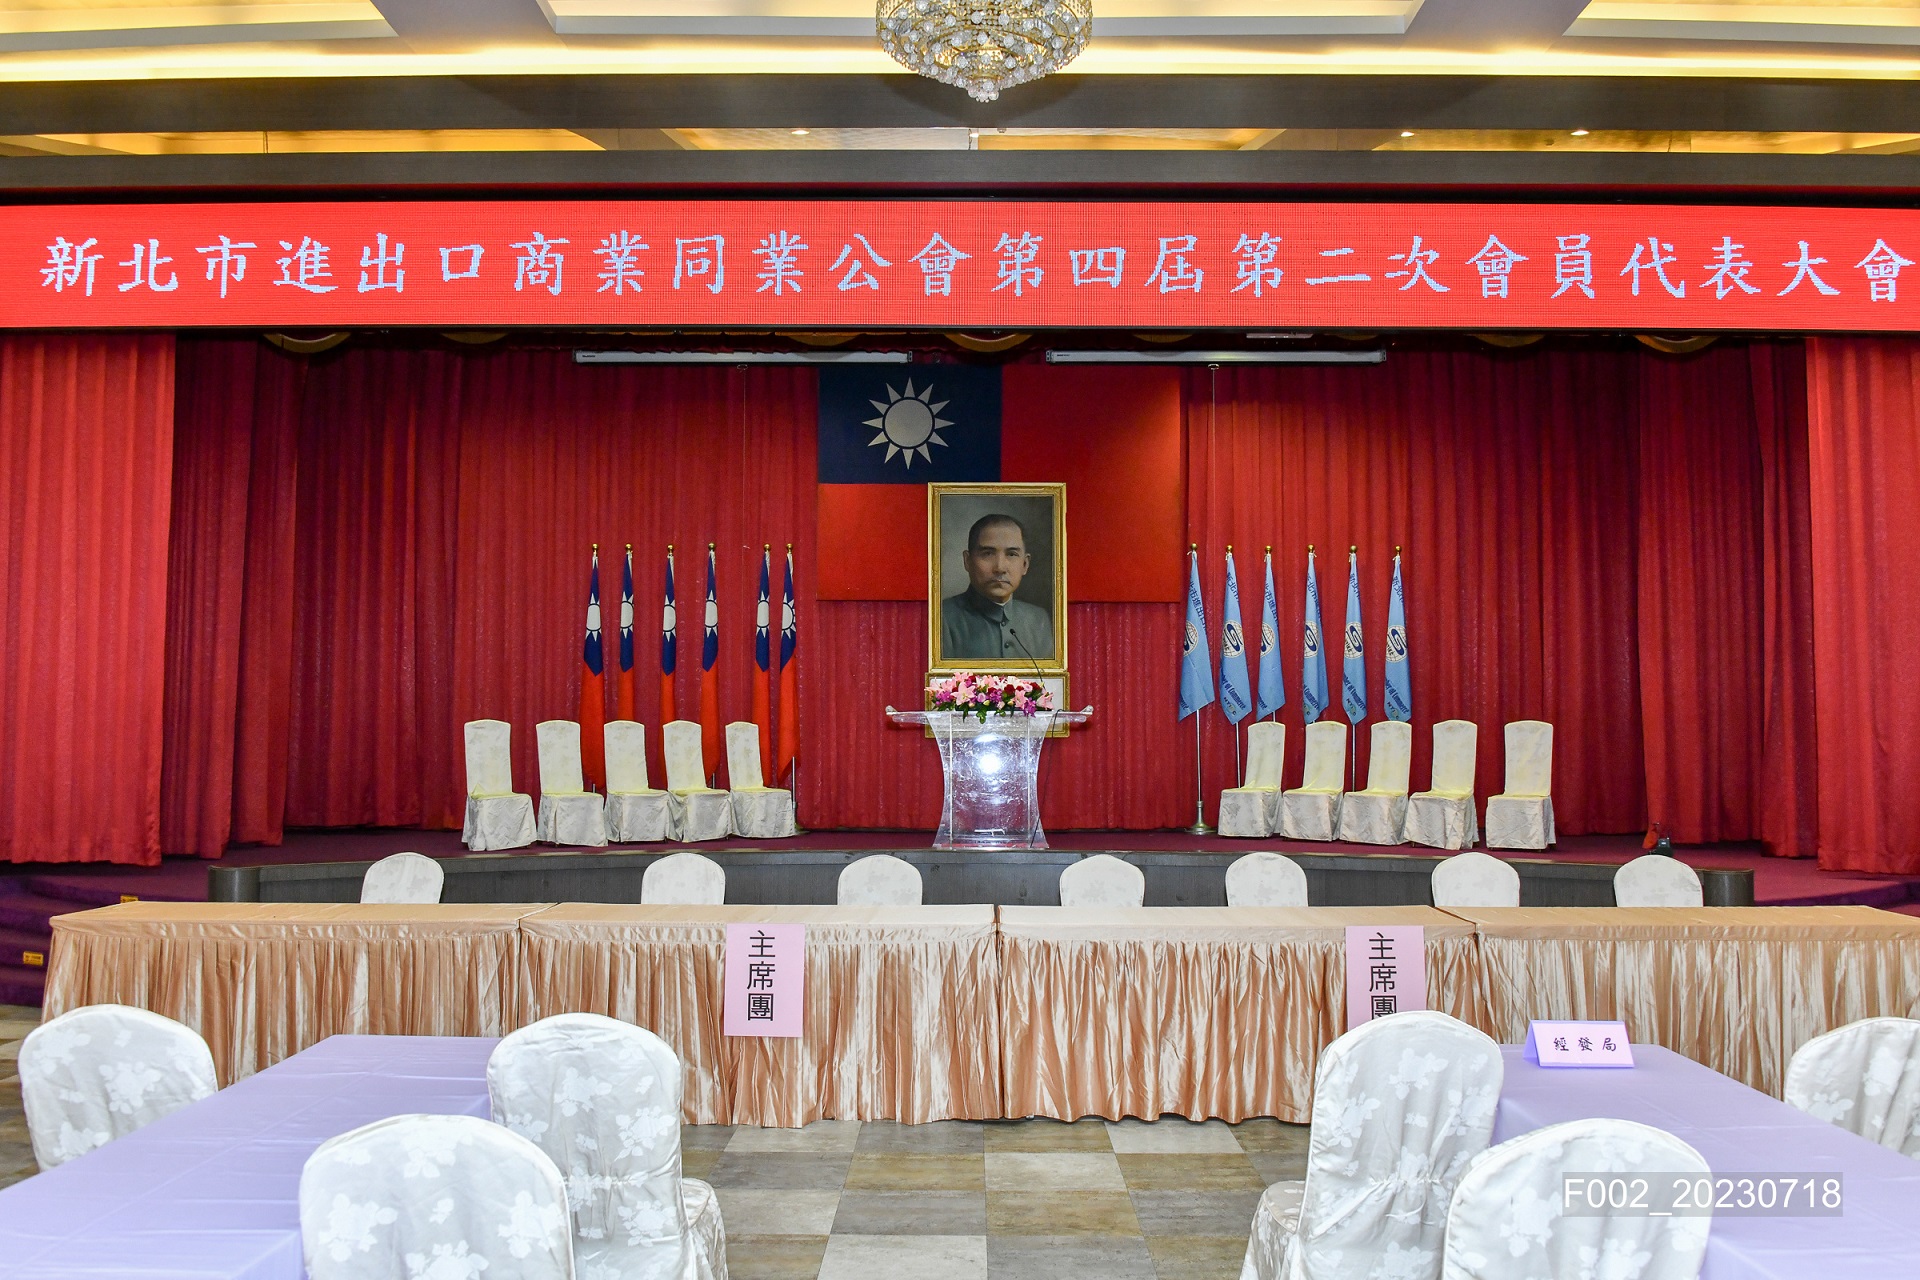 本會112年會員代表大會於7月18日(星期二)下午4:00假台北國軍英雄館一樓宴會廳召開